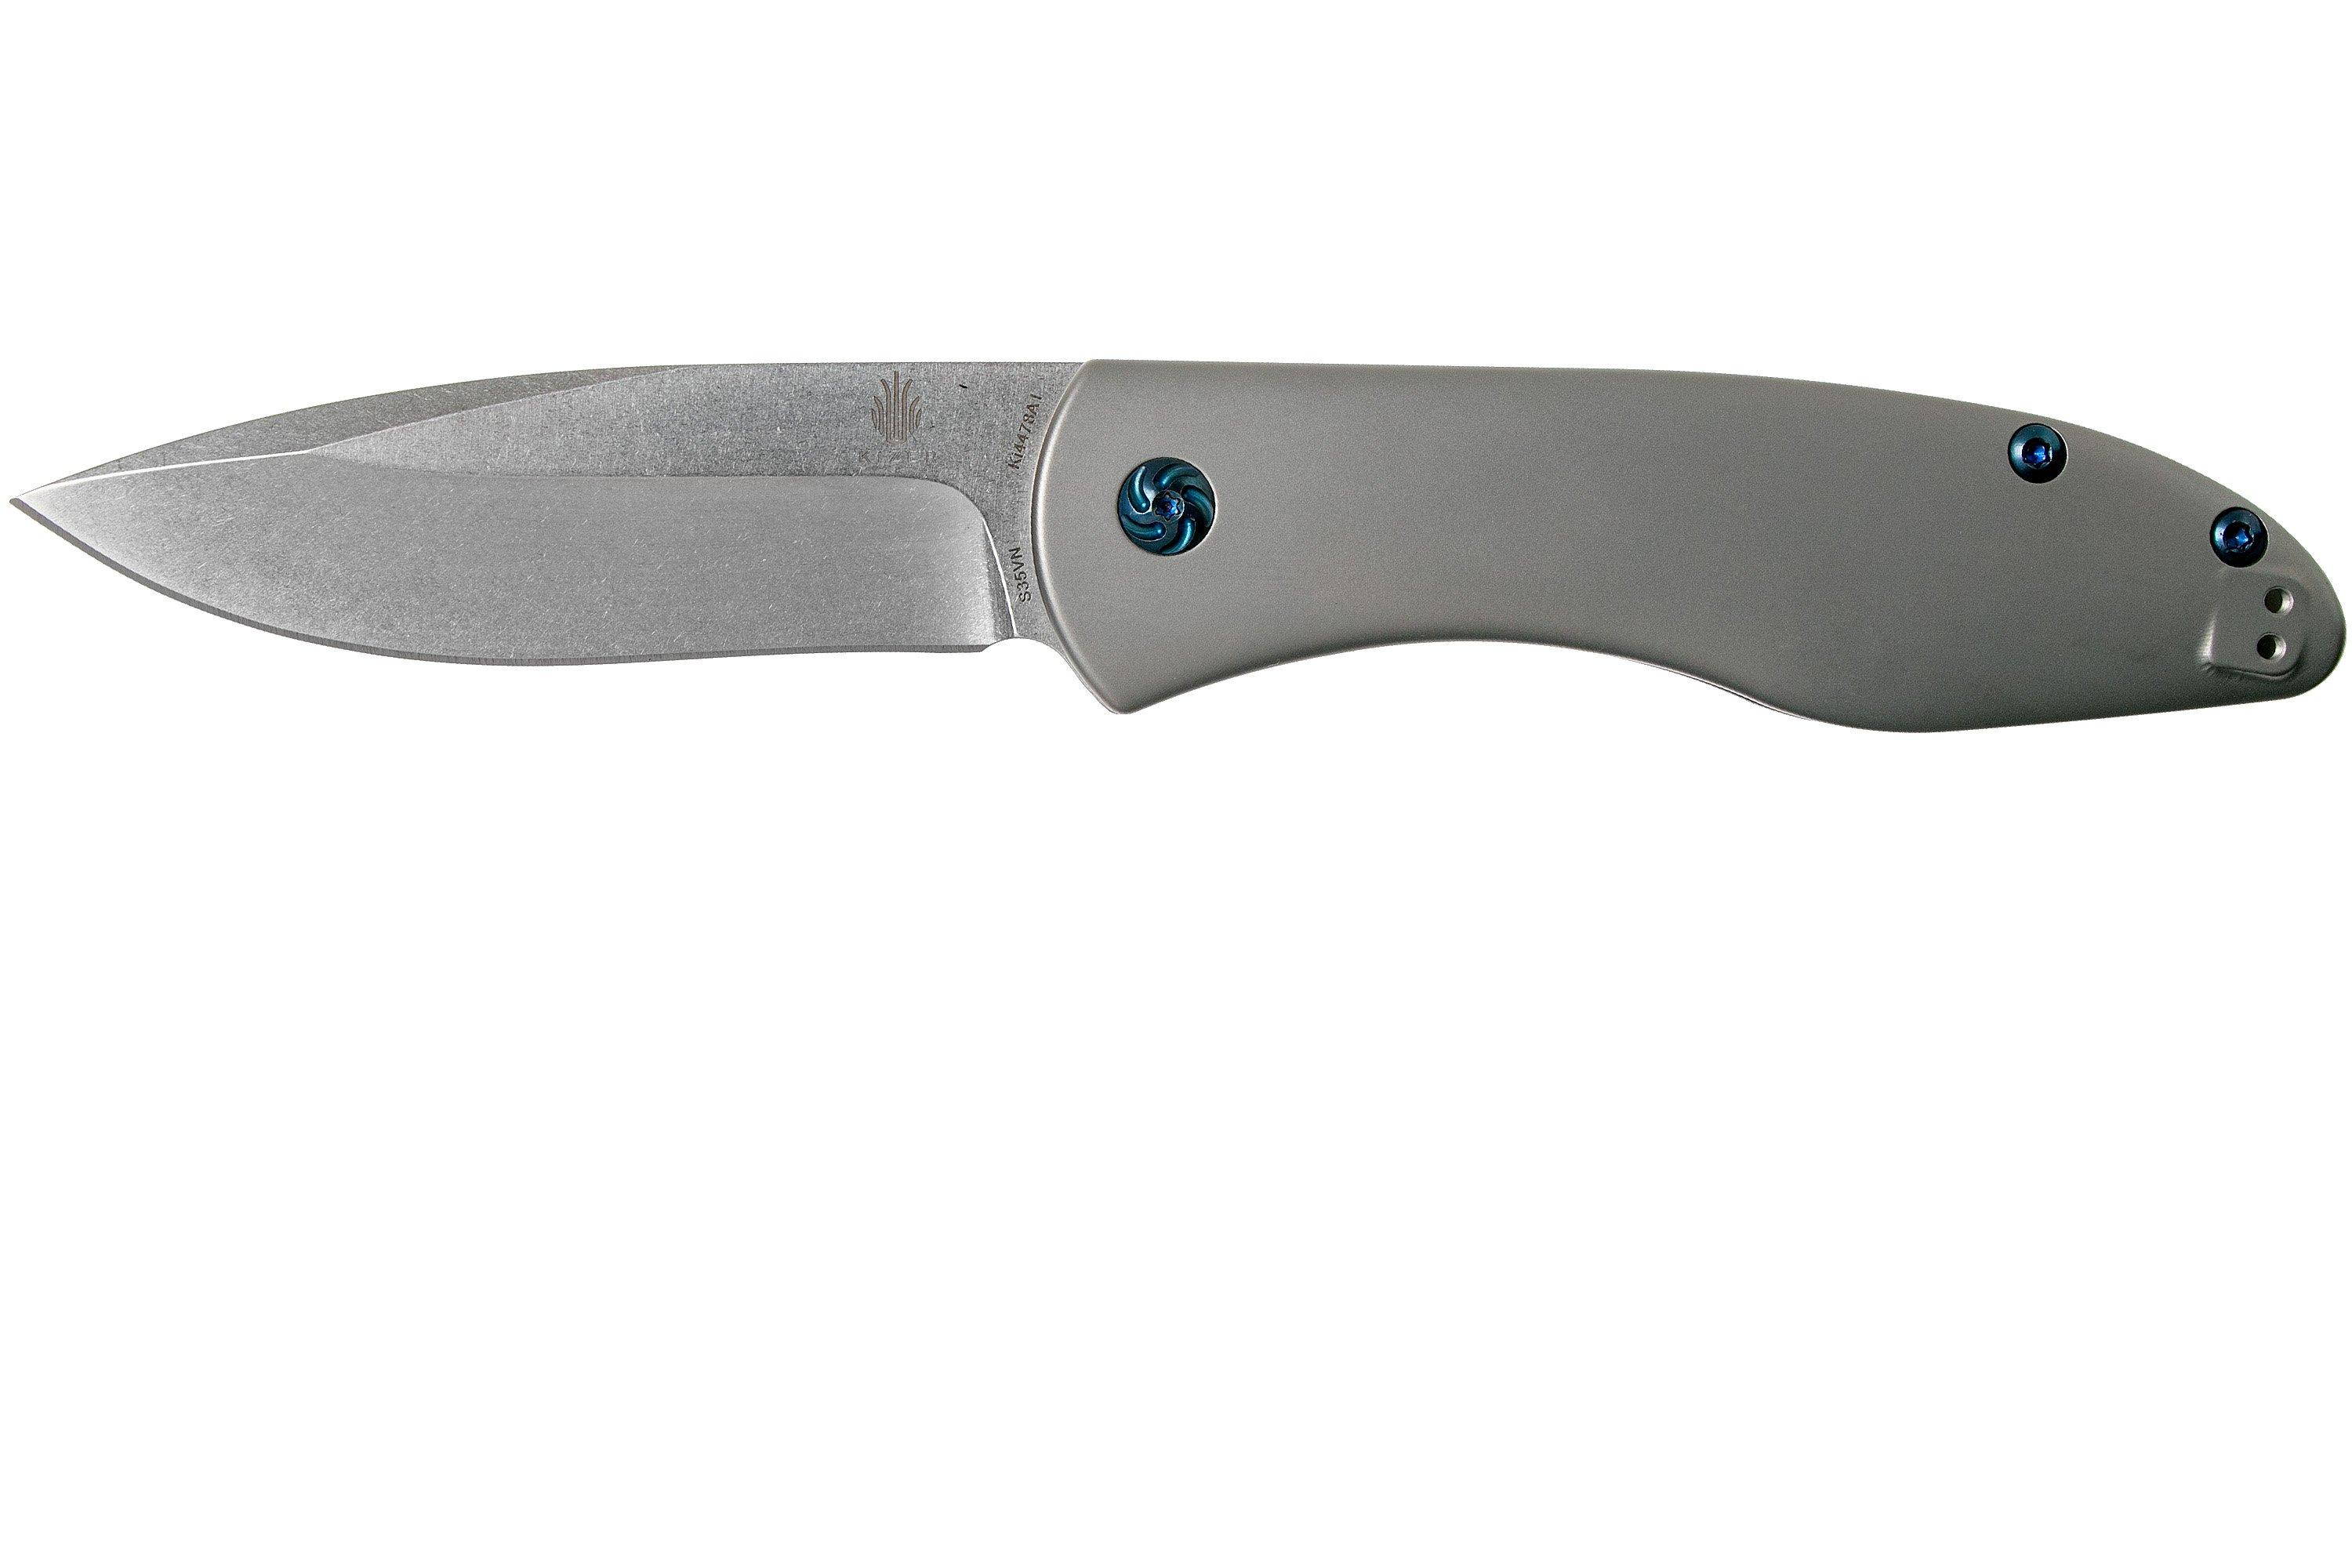 Kizer Velox 2 KI4478 pocket knife, Michael Vagnino design 